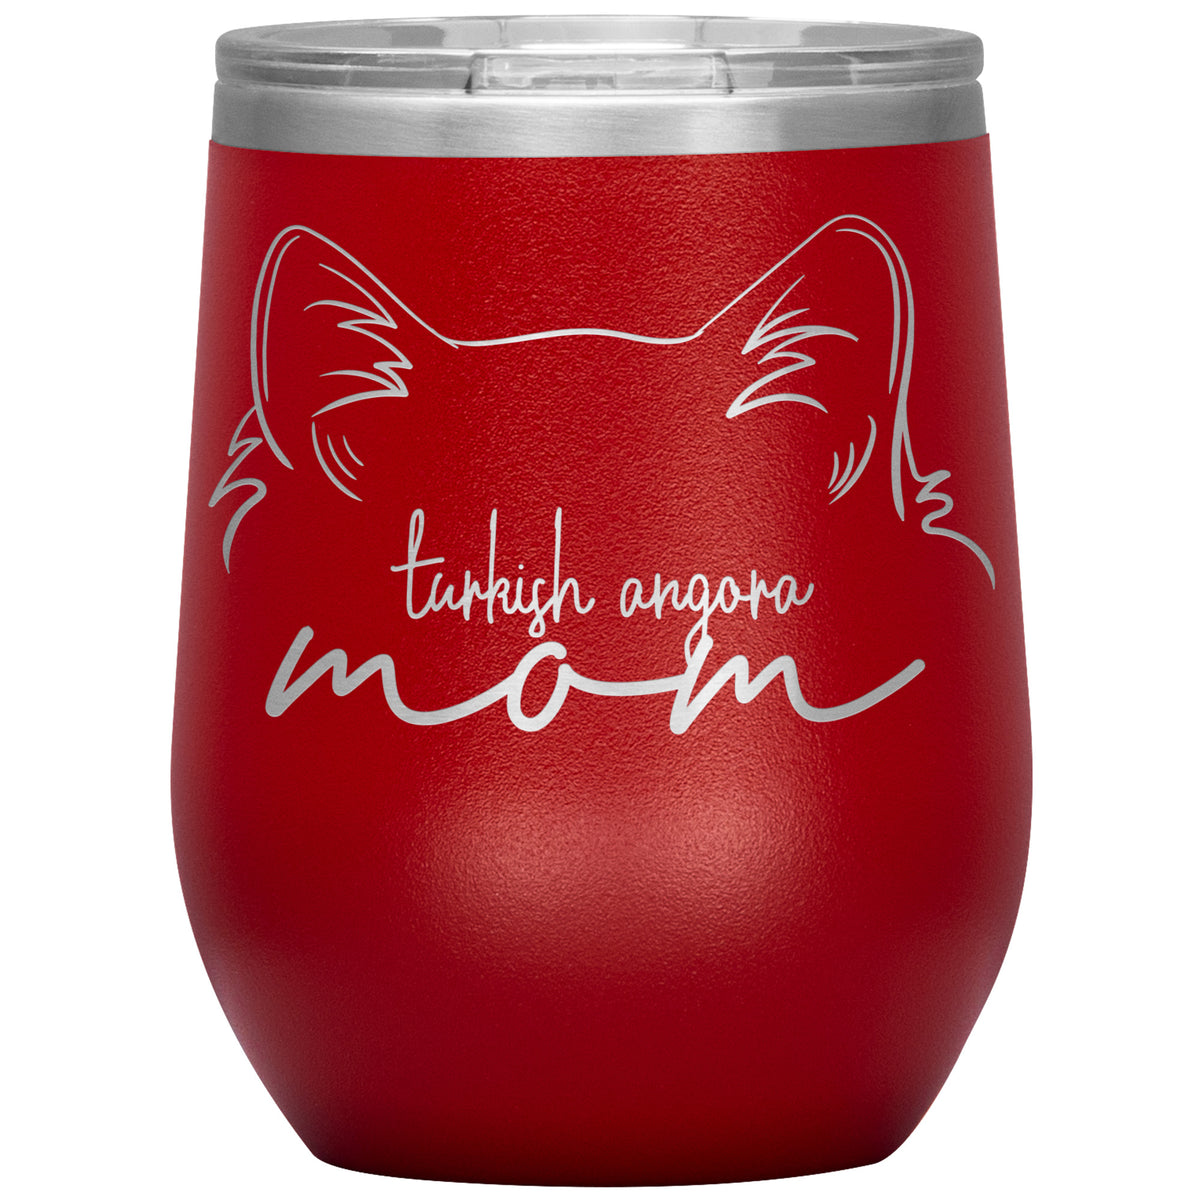 Turkish Angora Cat Mom Wine Tumbler - 3 Red Rovers